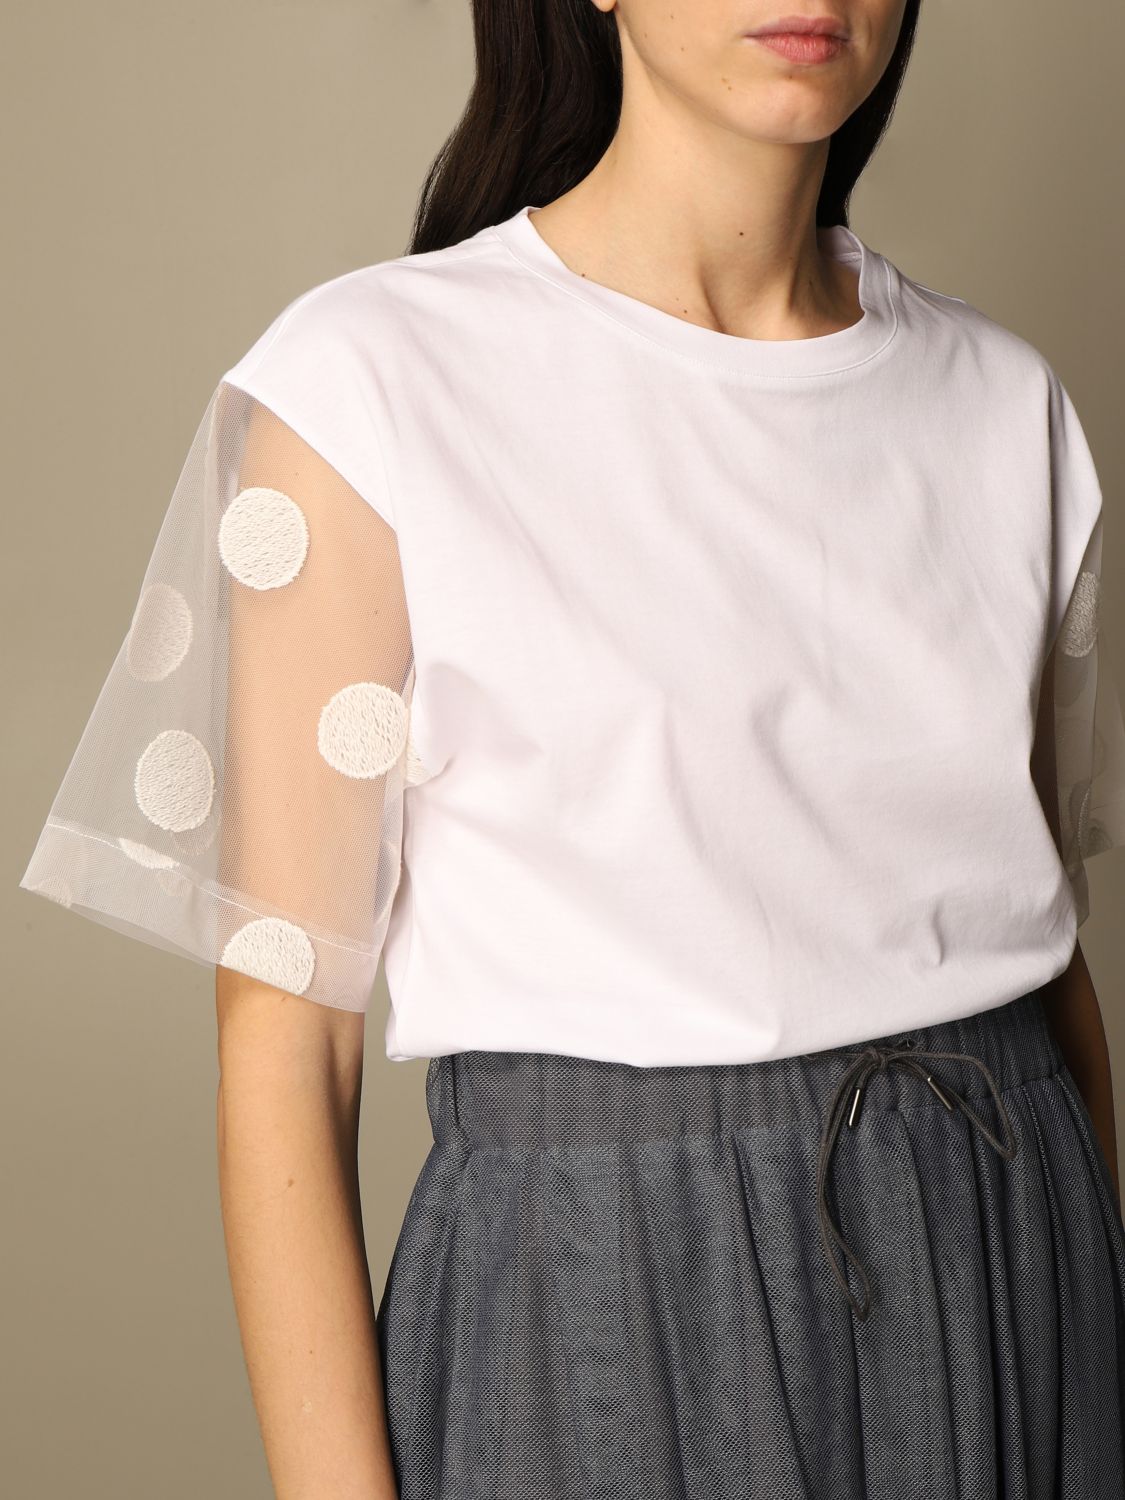 Fabiana Filippi cotton t-shirt with polka dot sleeves